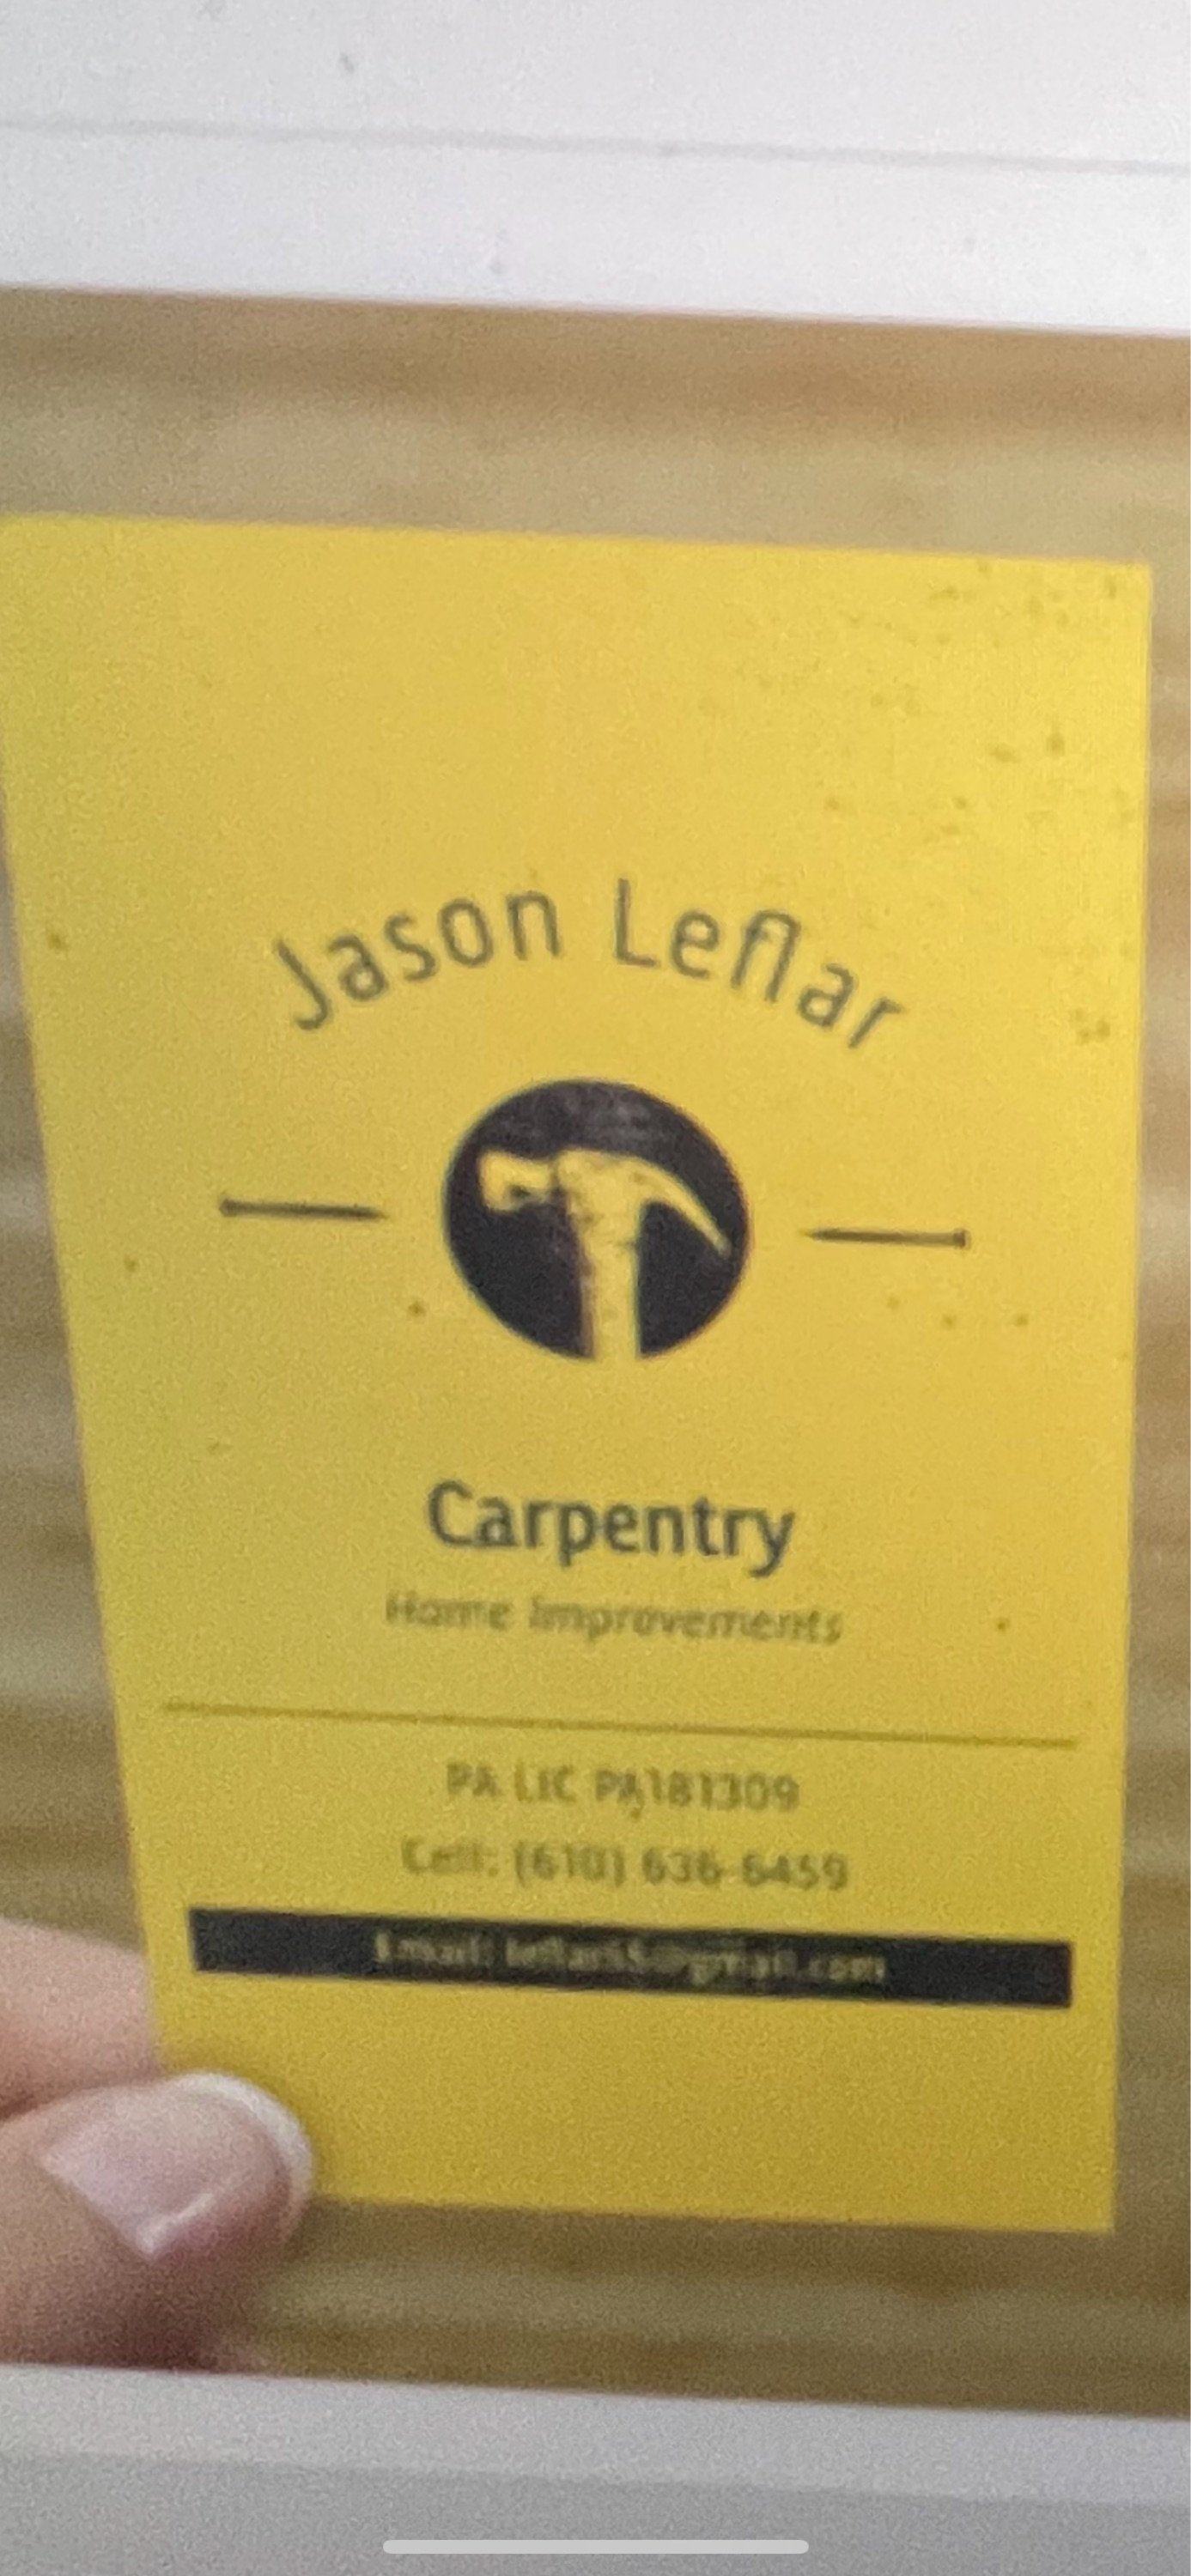 Jason Leflar Carpentry, LLC Logo